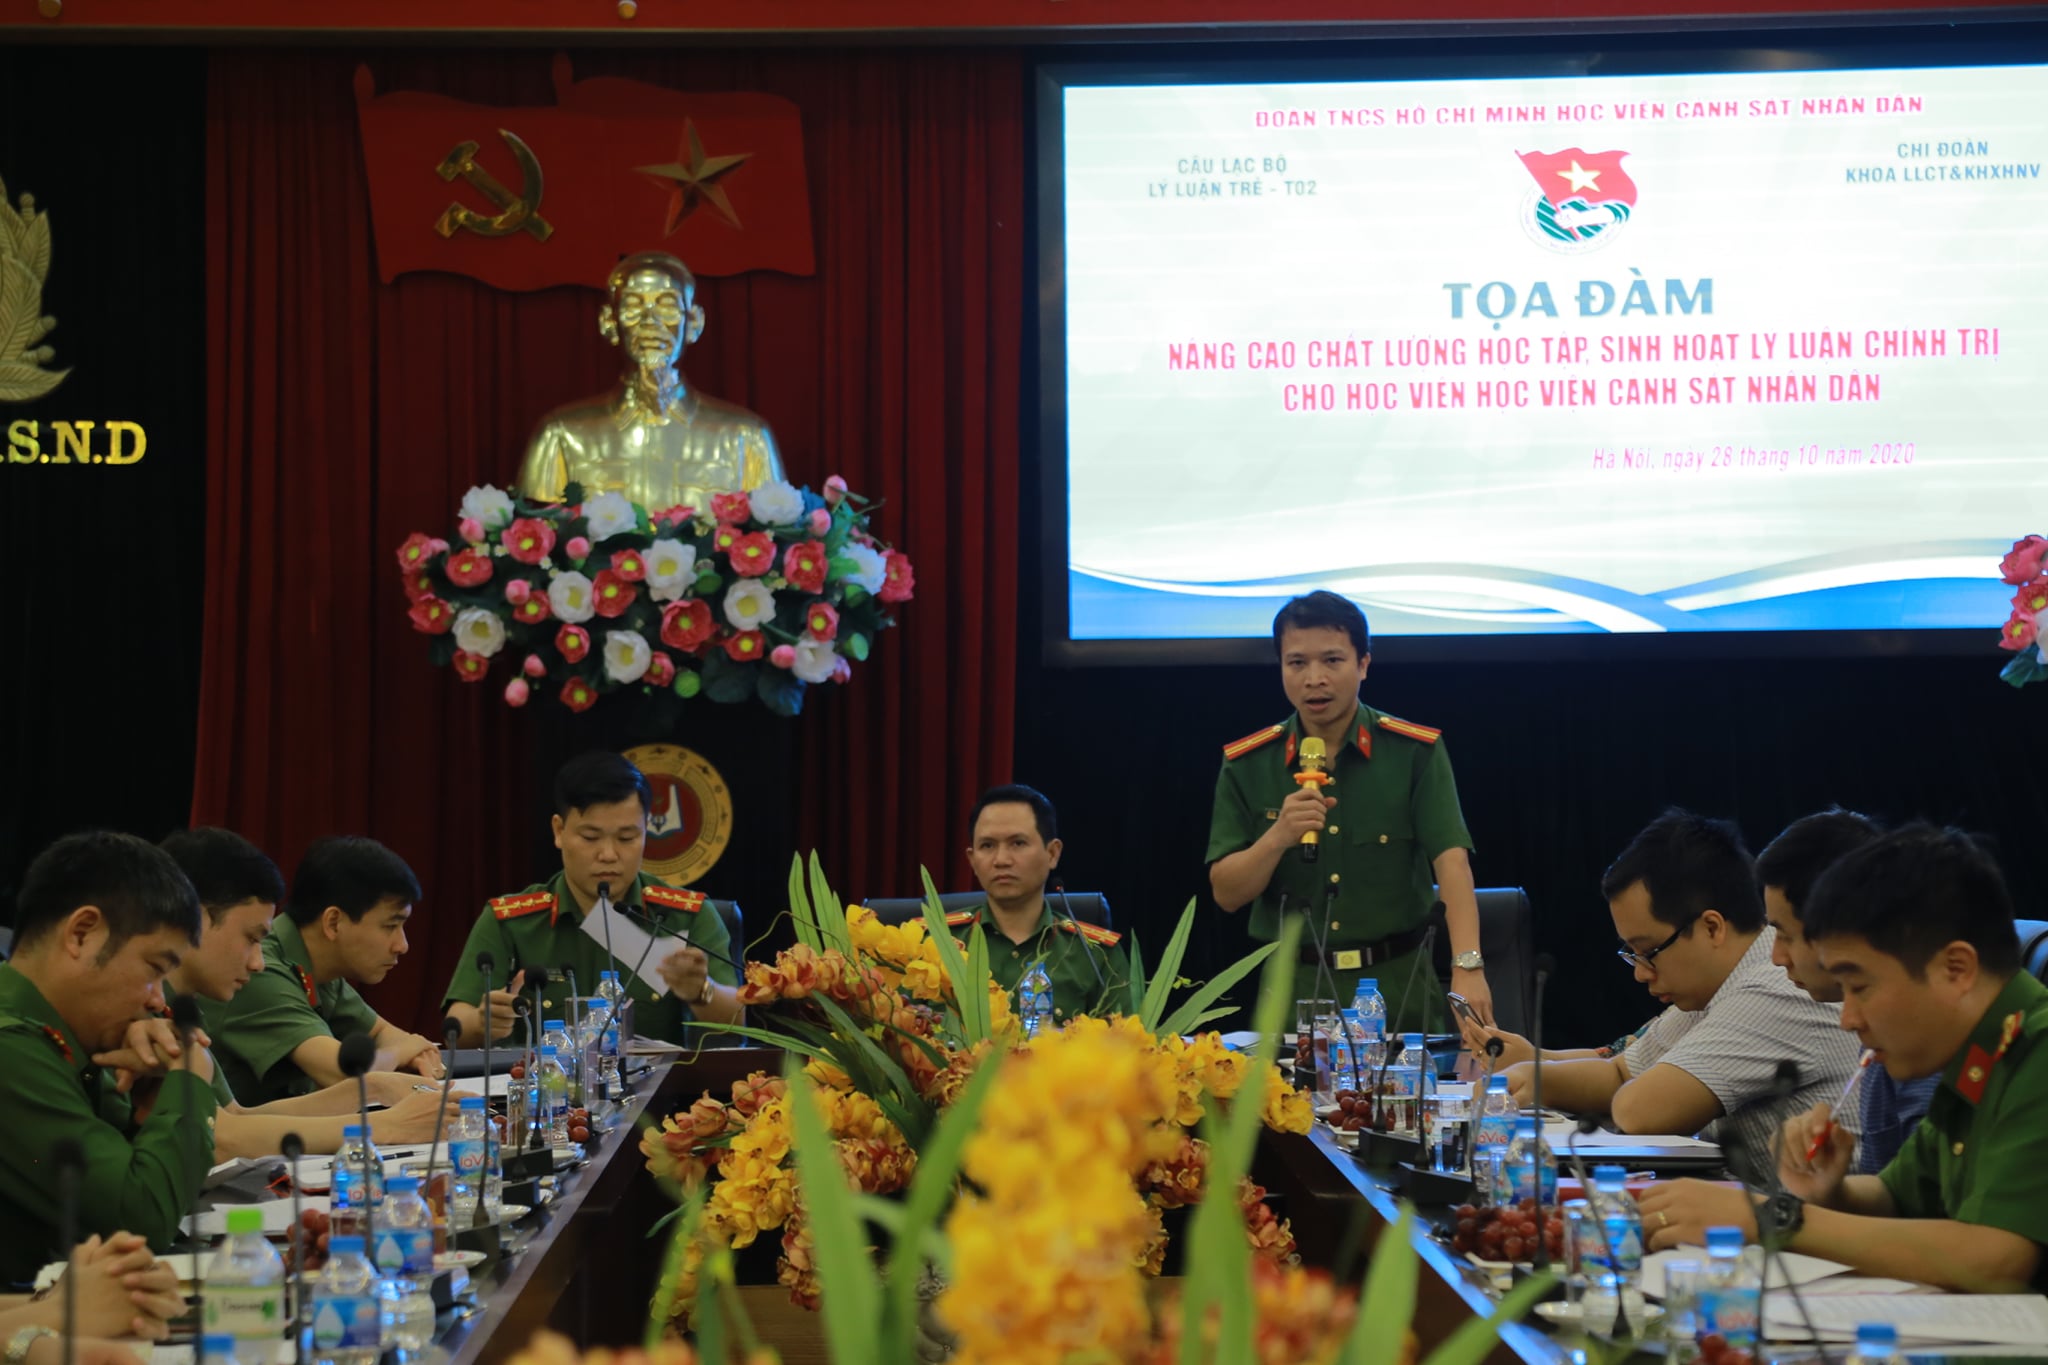 Thiếu tá, TS Ngô Văn Vinh - Phó Trưởng Khoa CSĐT, Chủ nhiệm CLB Lý luận trẻ Học viện CSND điều hành chương trình Toạ đàm